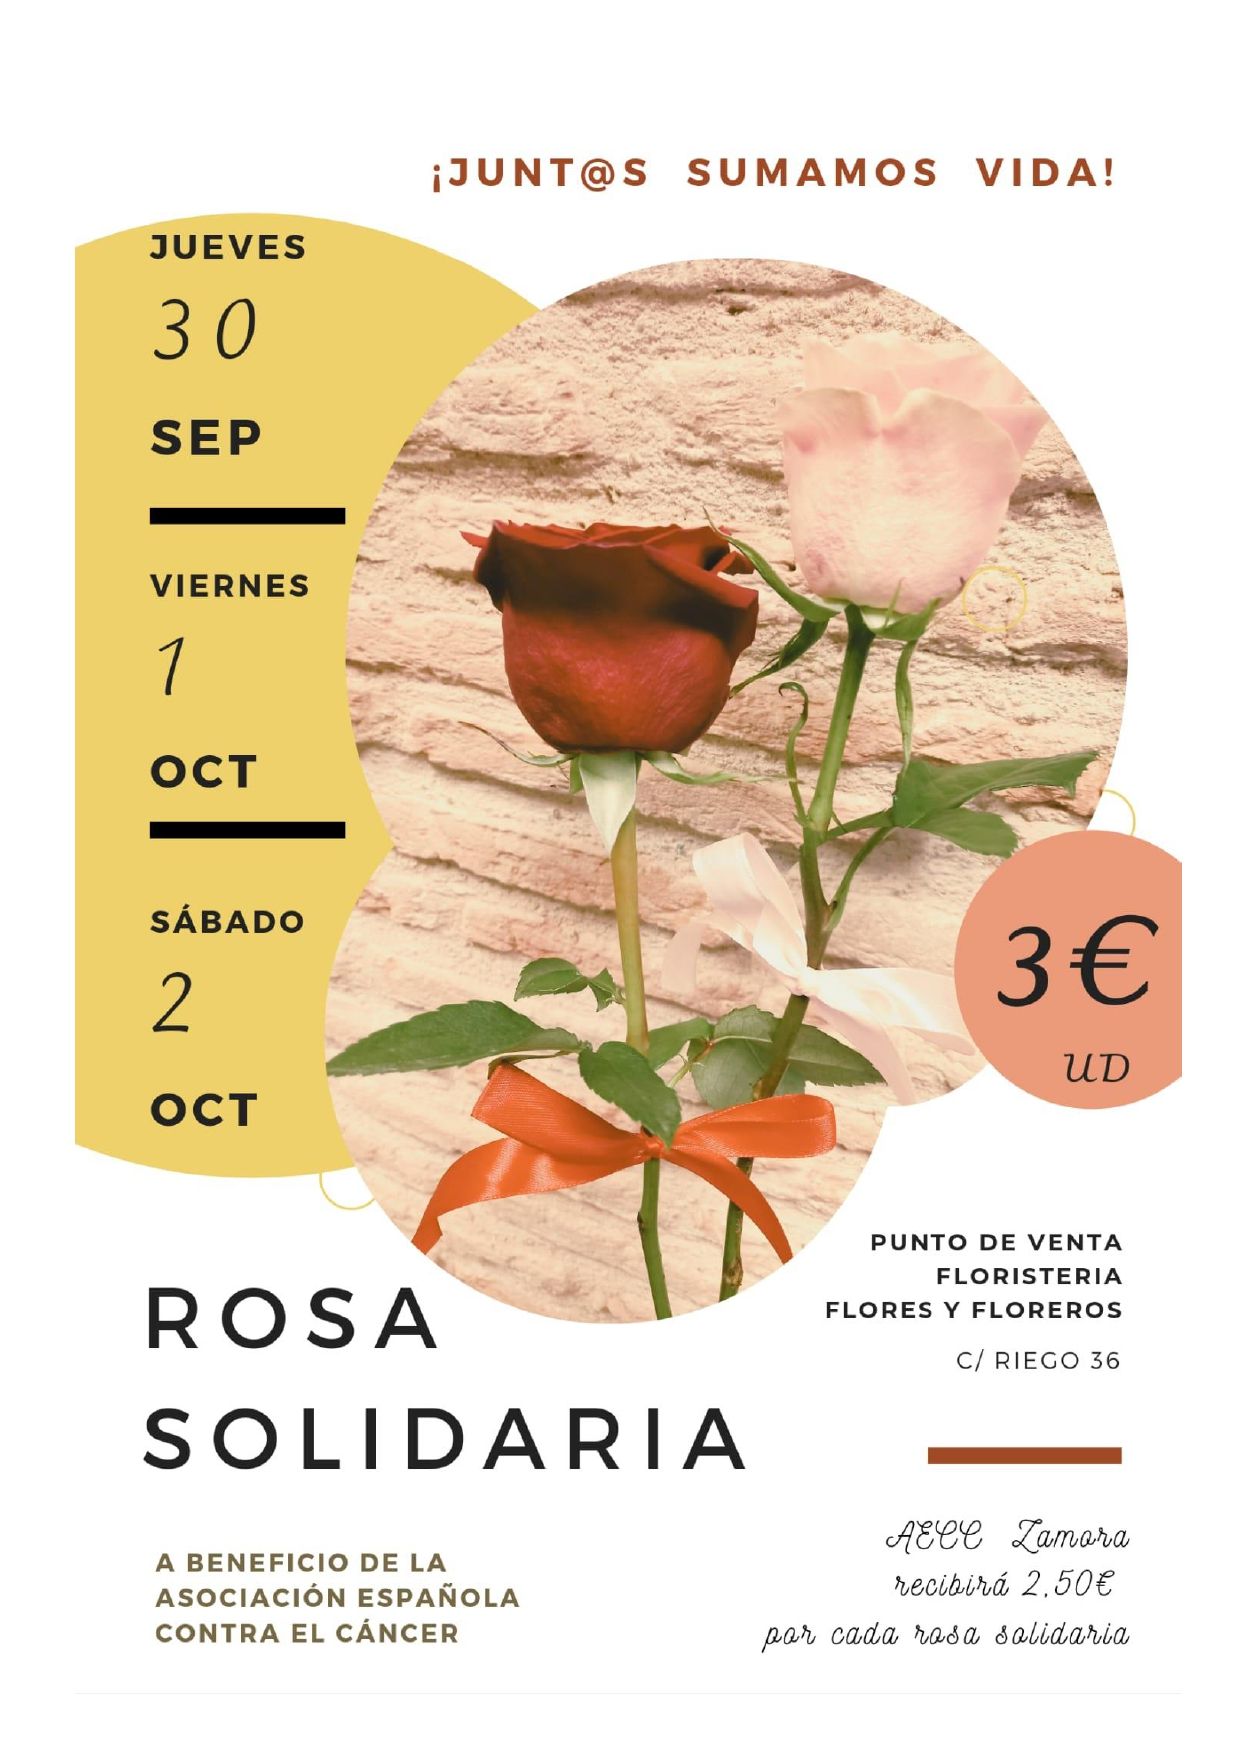 Campaña de rosas solidarias de la Asociación Española contra el Cáncer y la floristería Flores y Floreros.